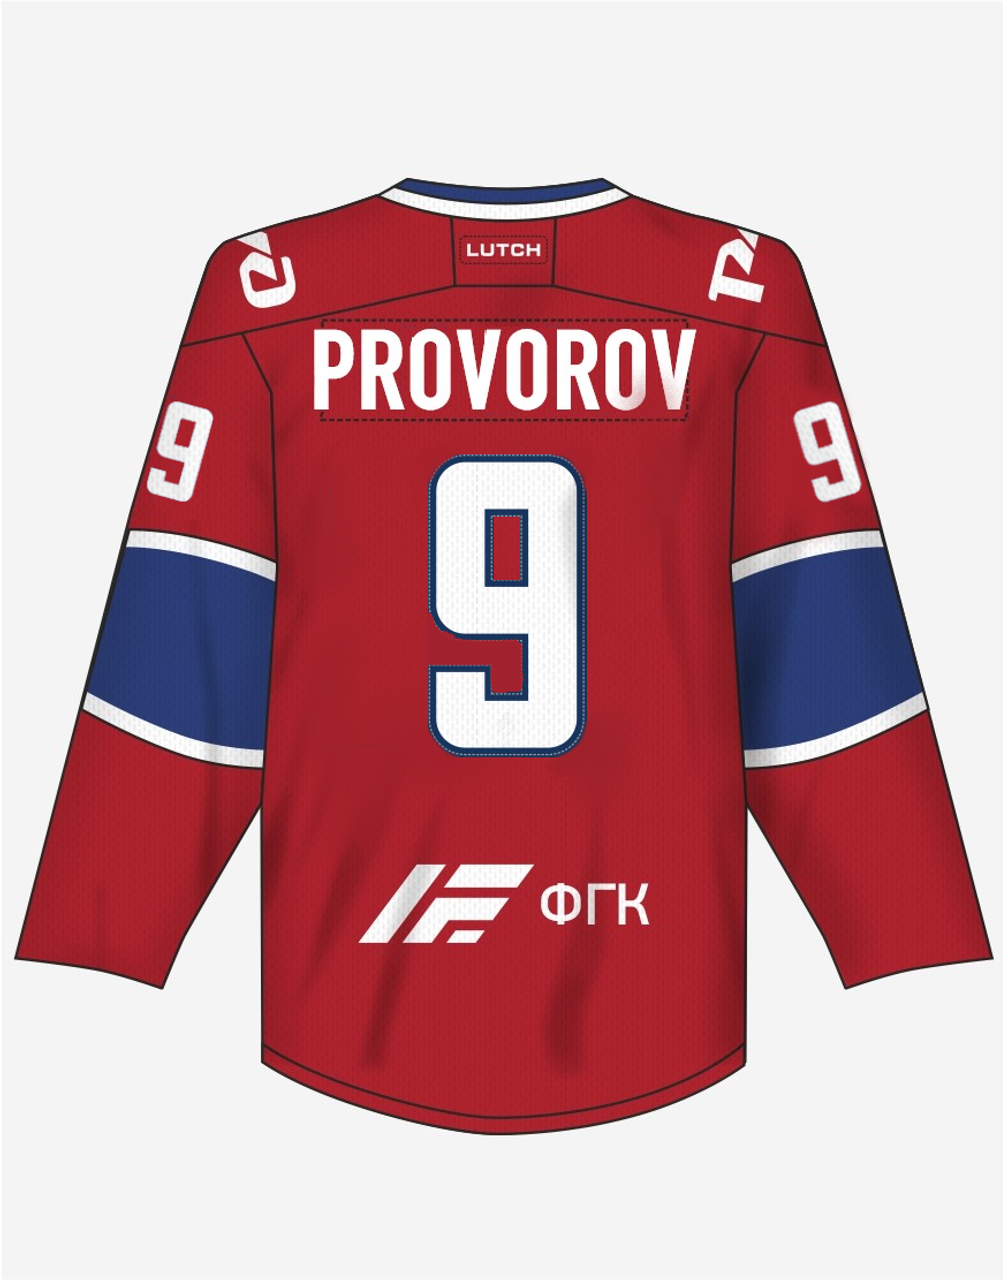 Ivan Provorov Jerseys, Ivan Provorov Shirts, Apparel, Gear